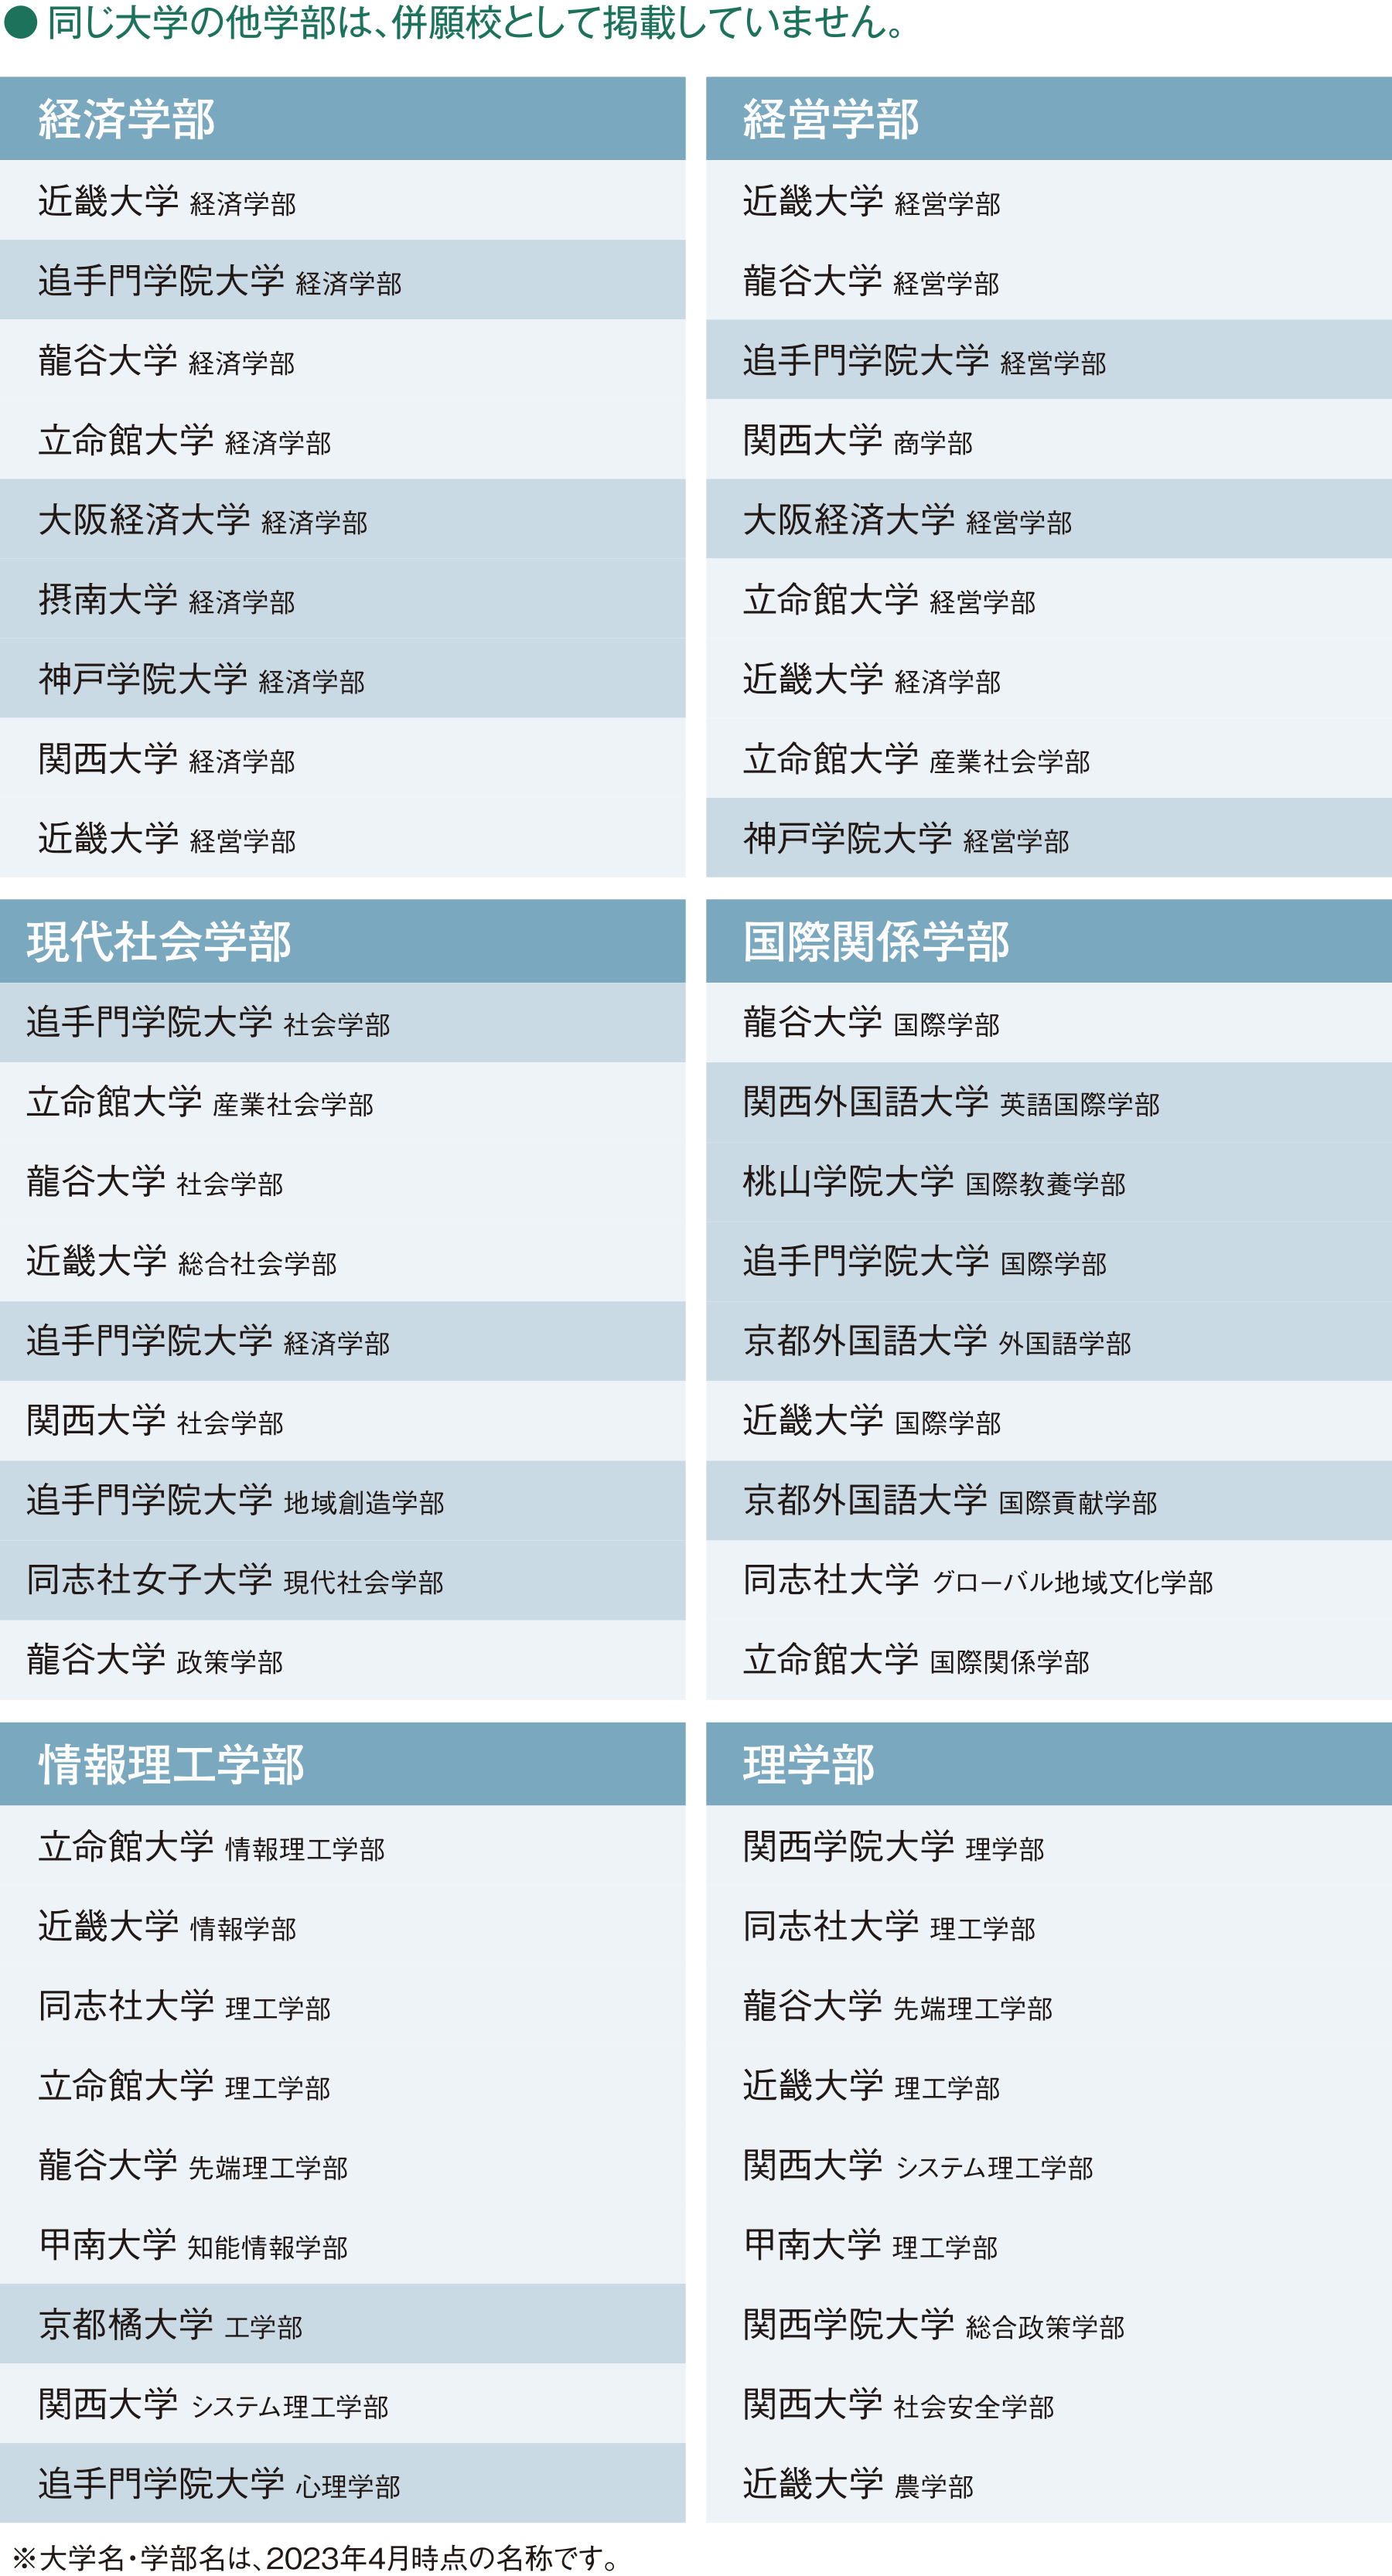 京都産業大学に出願した先輩が併願した近畿エリアの私立大学・学部の一覧（同じ大学の他学部は、併願校として掲載していません。）※大学名・学部名は、2023年4月時点の名称です。